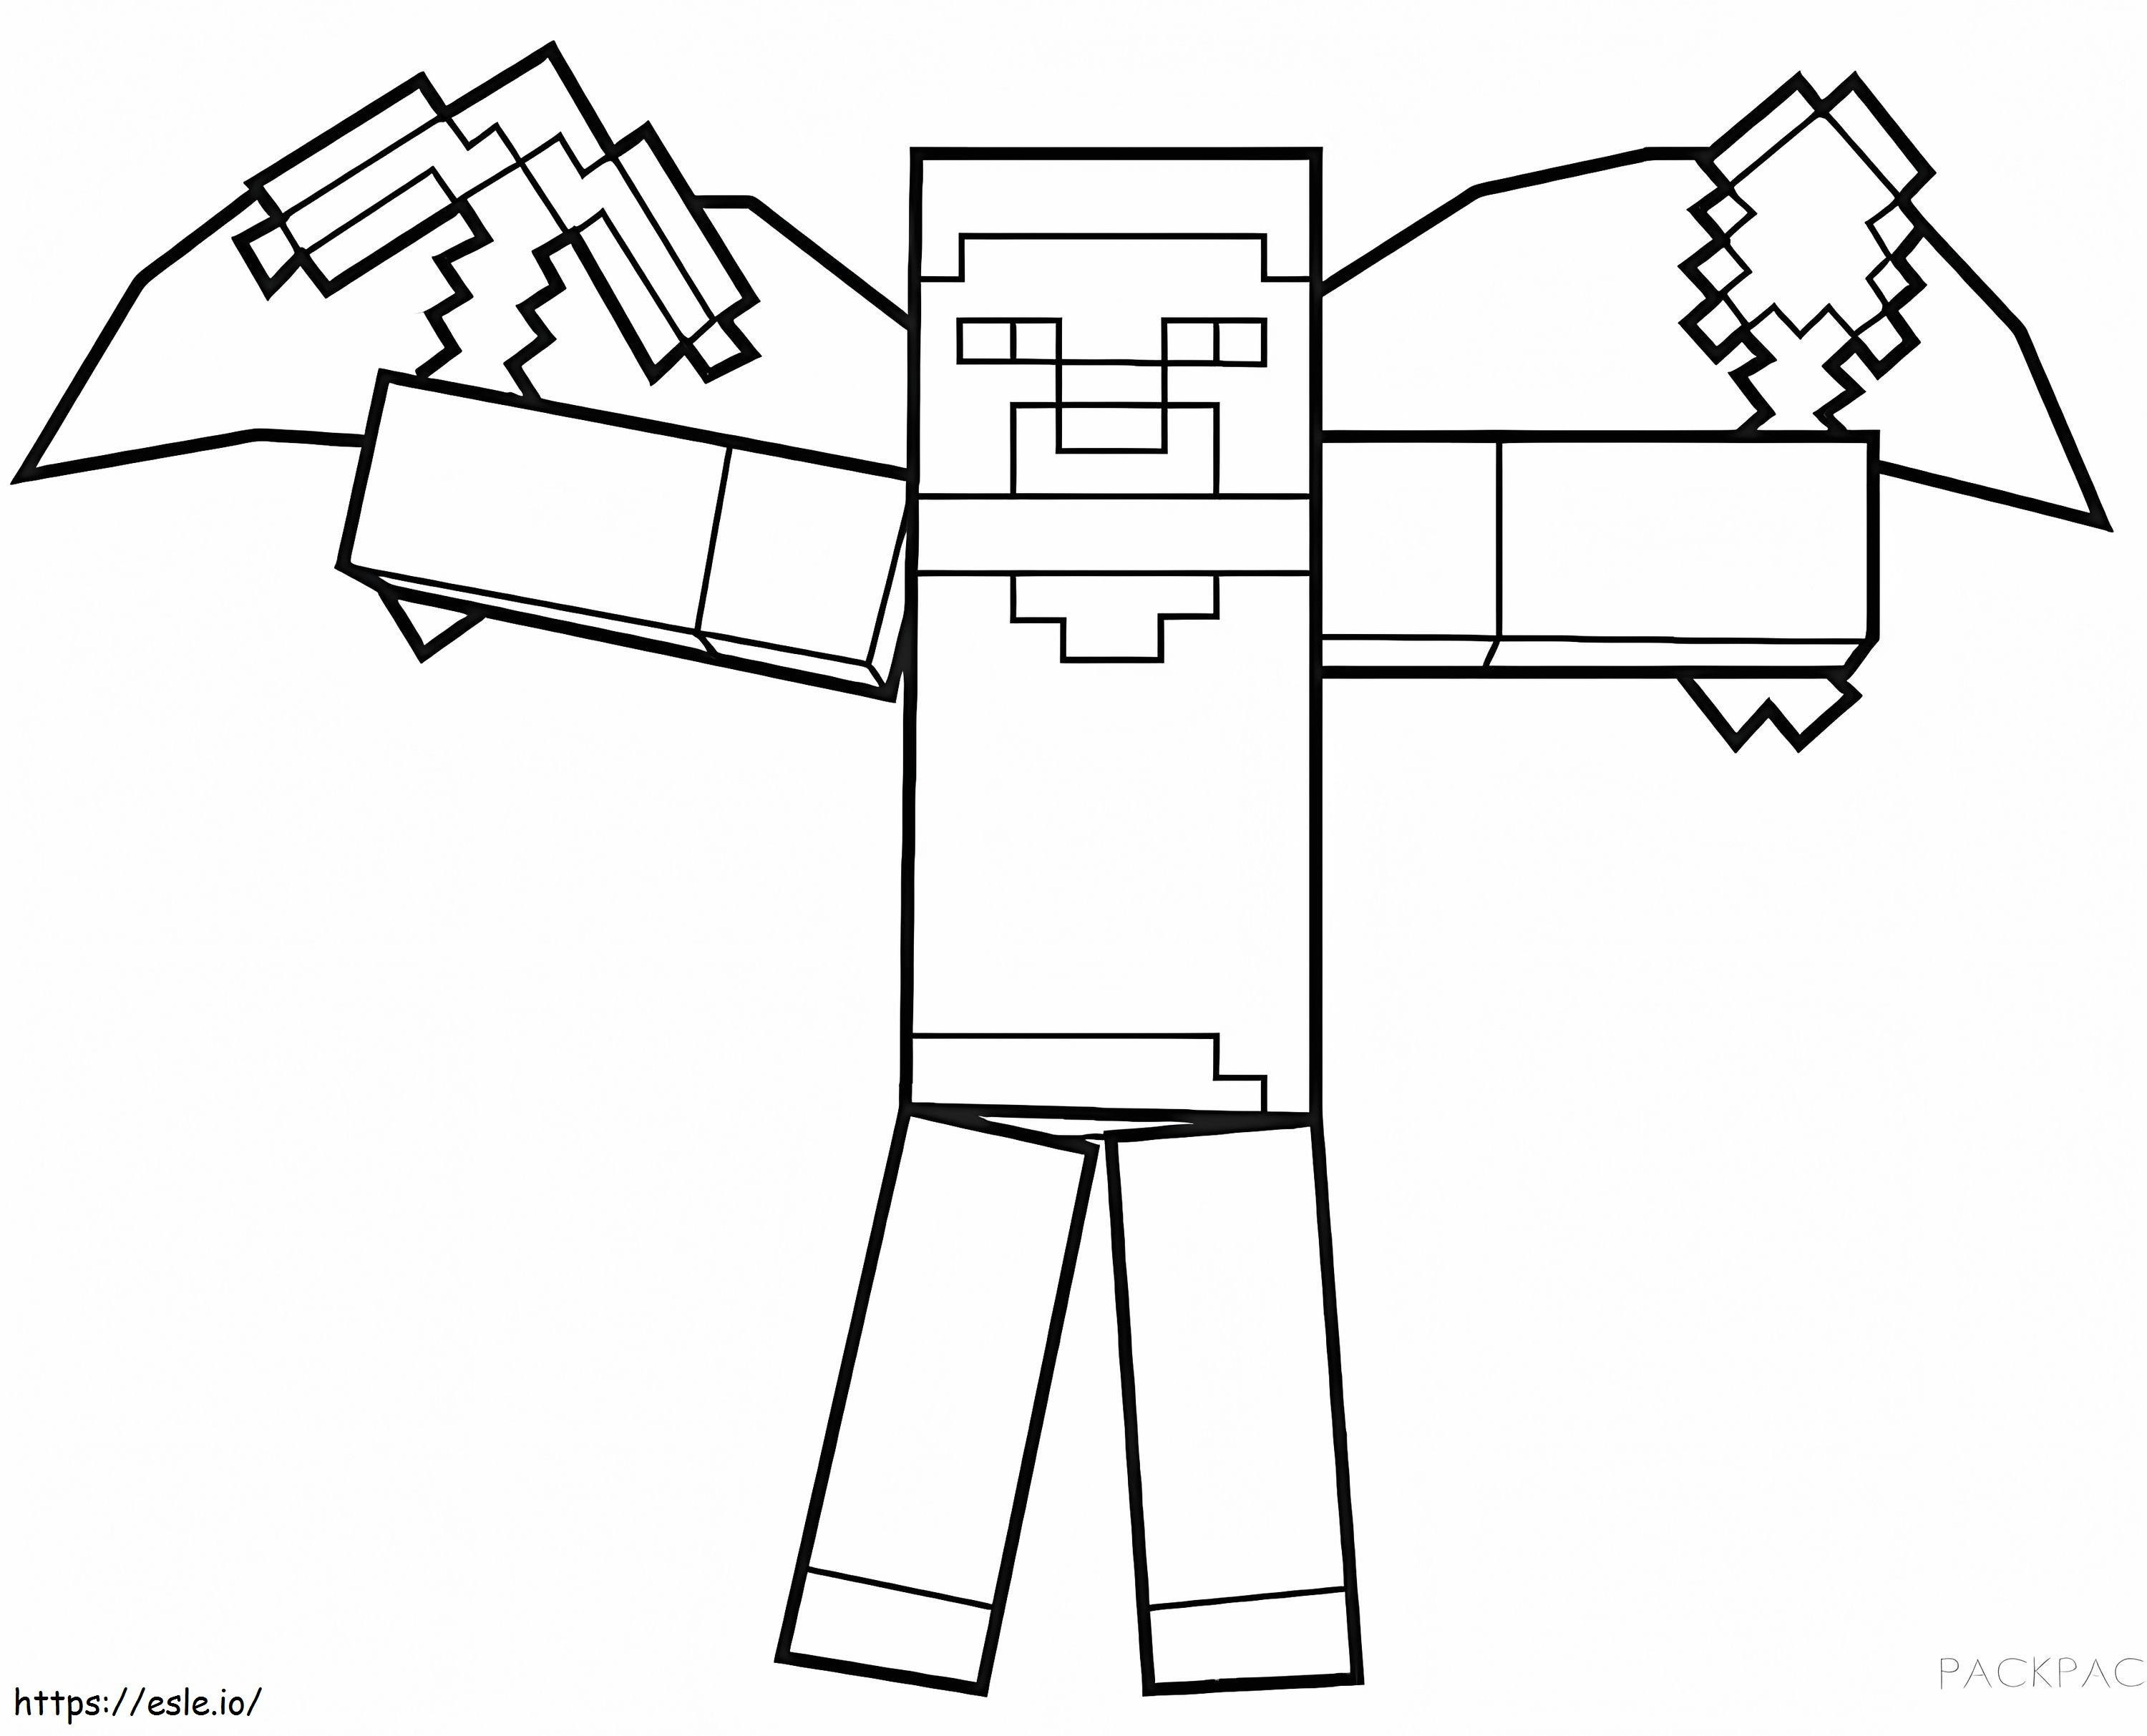 Coloriage Steve personnage de Minecraft en Ligne Gratuit à imprimer